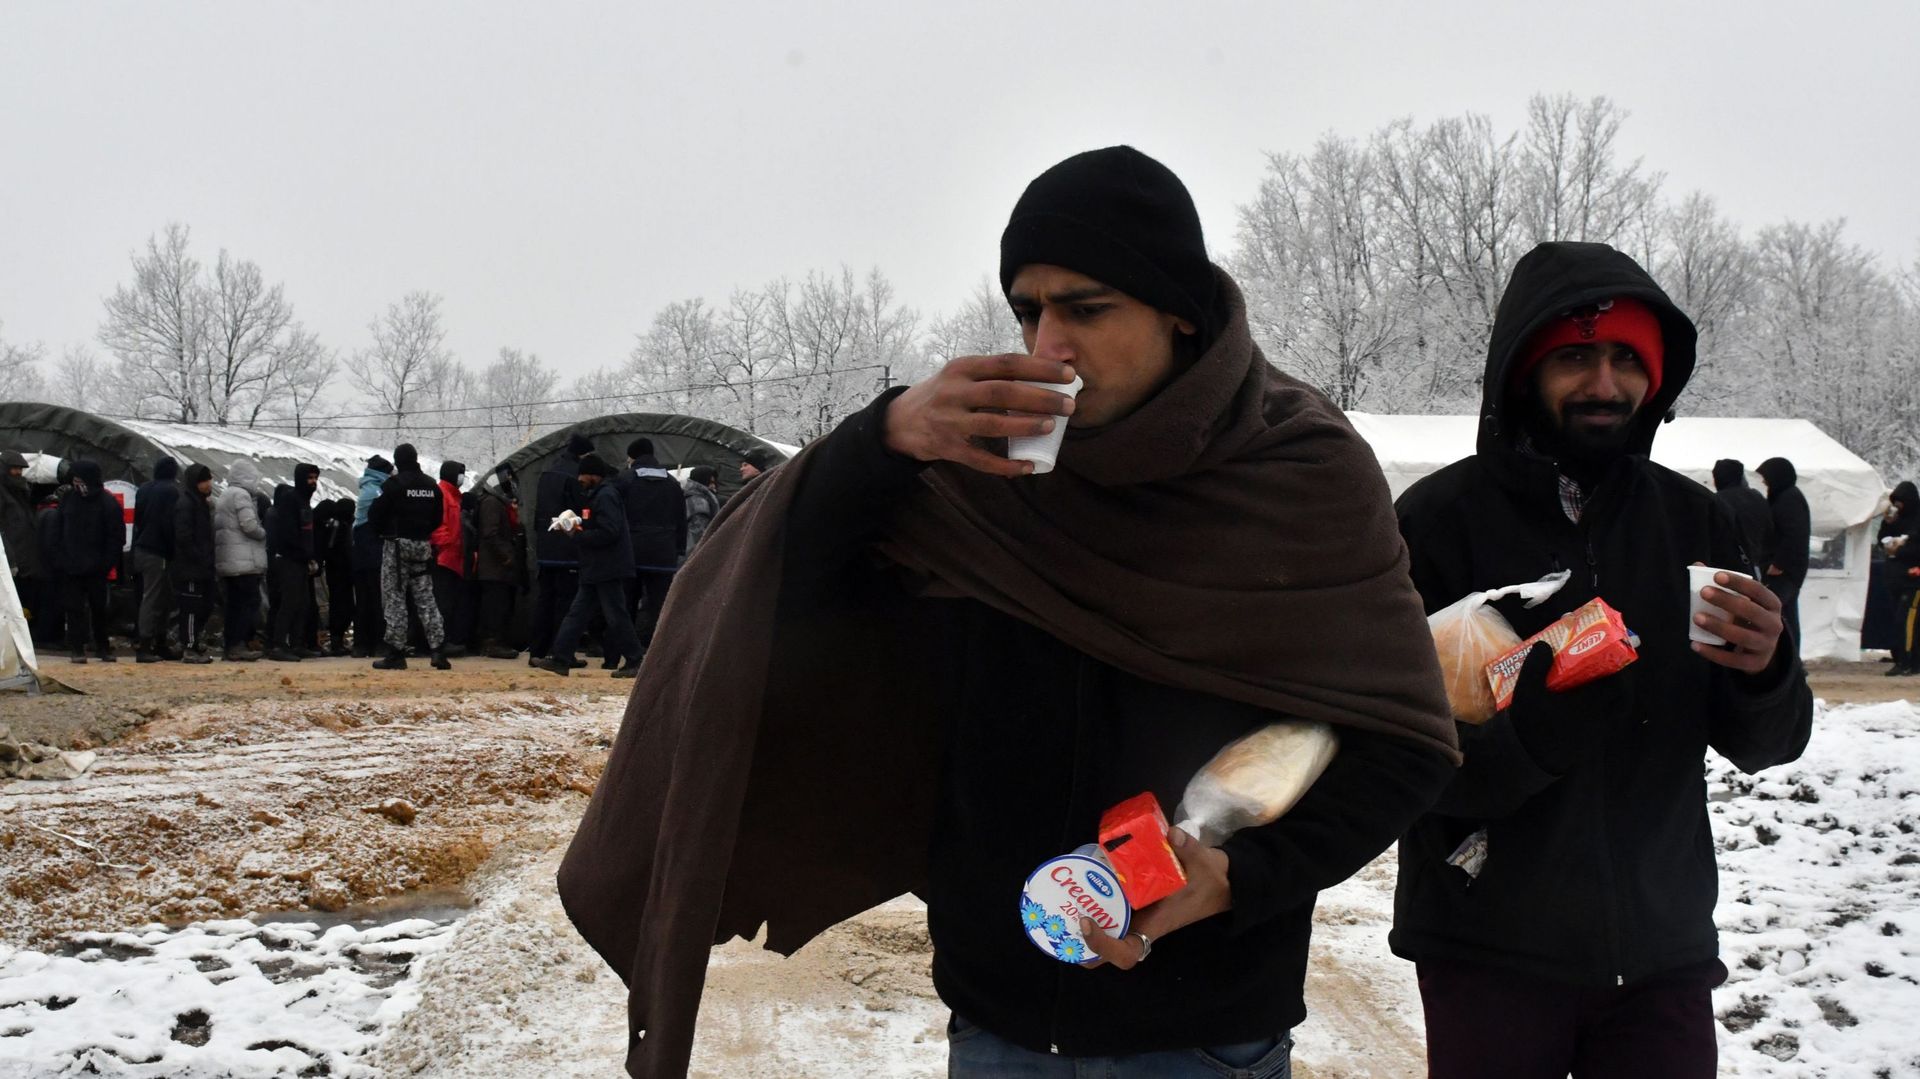 Réfugiés : la route des Balkans, une dangereuse impasse européenne